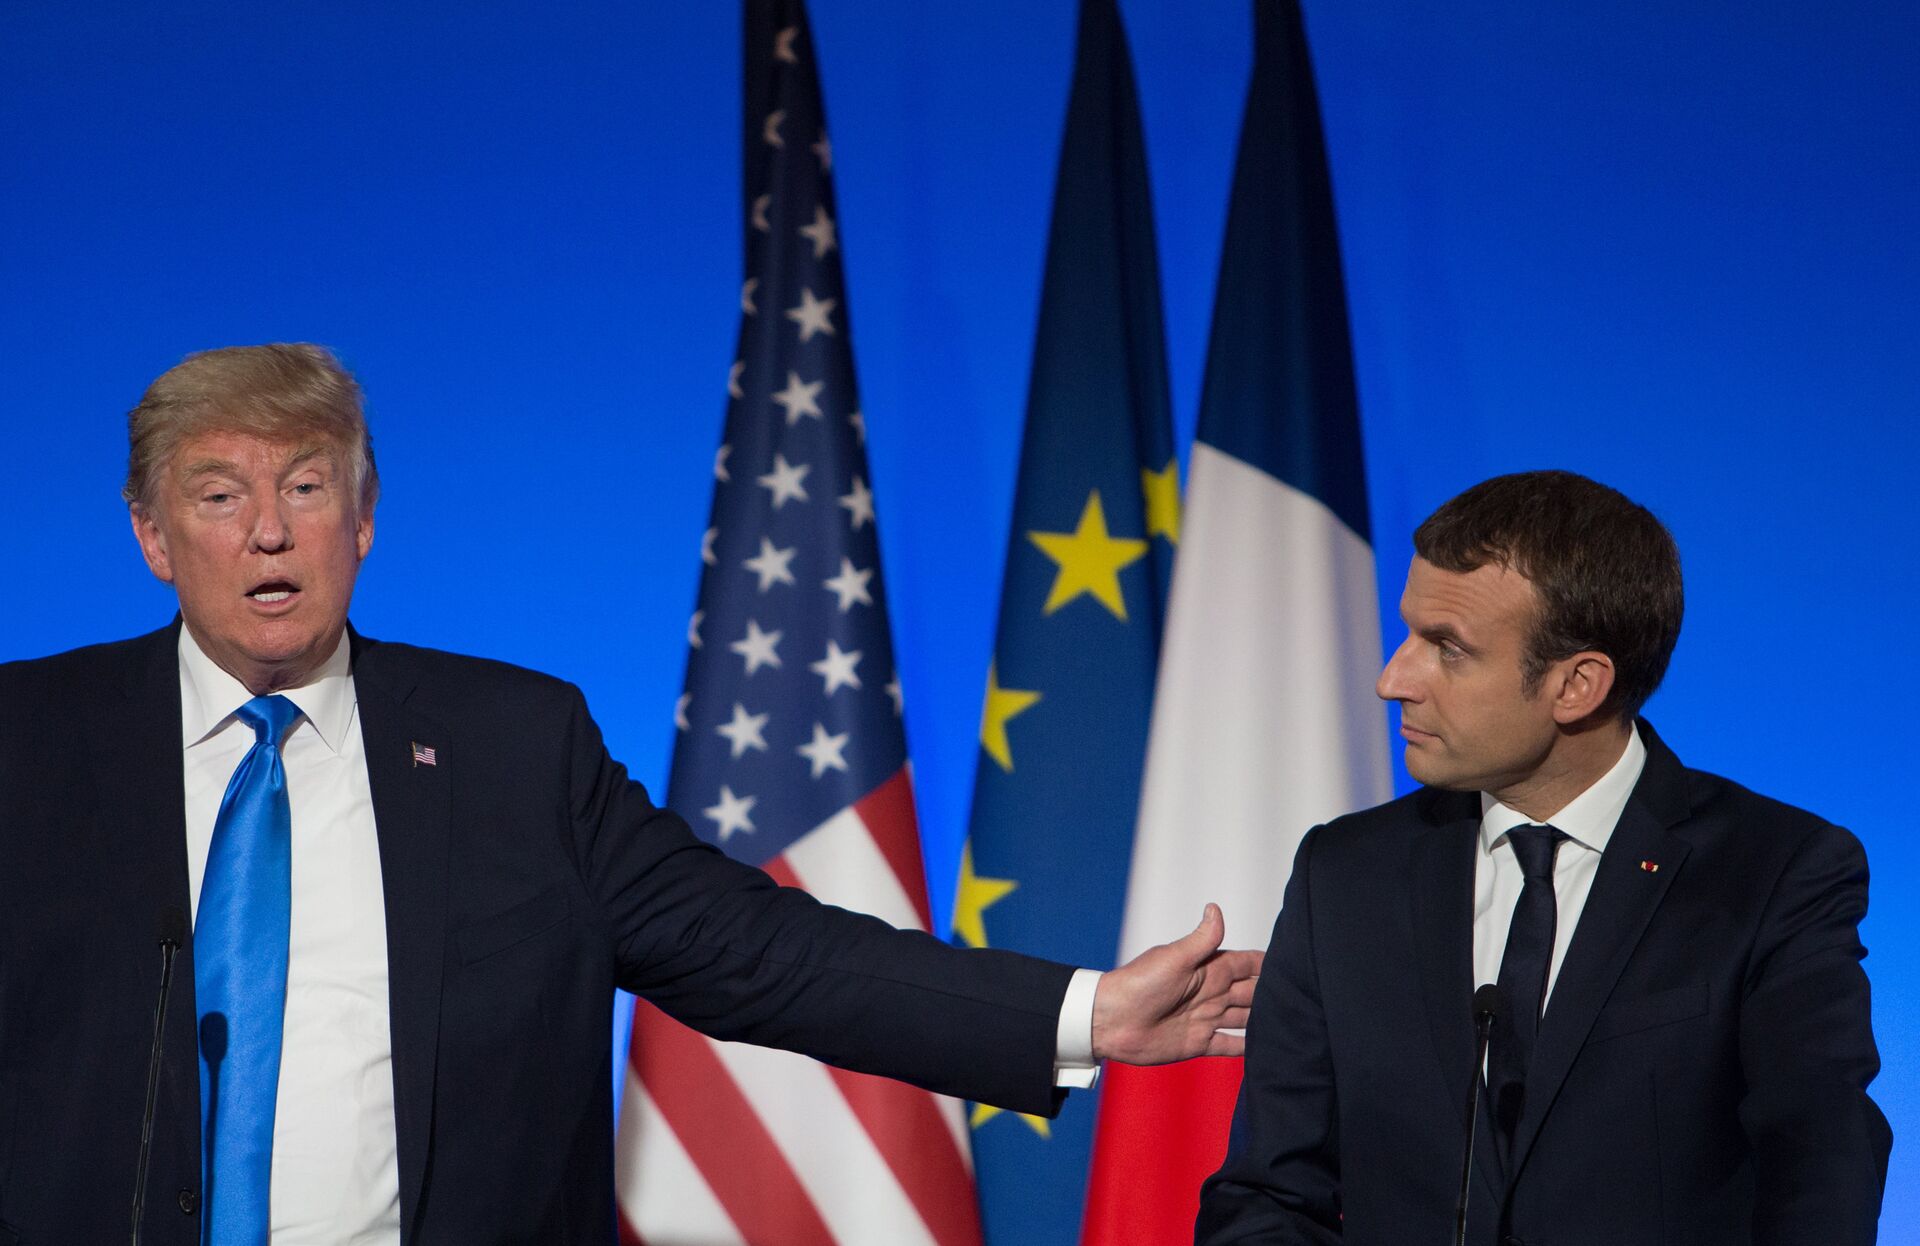 Президент США Дональд Трамп и президент Франции Эммануэль Макрон на совместной пресс-конференции в Париже. 13 июля 2017 - ИноСМИ, 1920, 15.10.2020